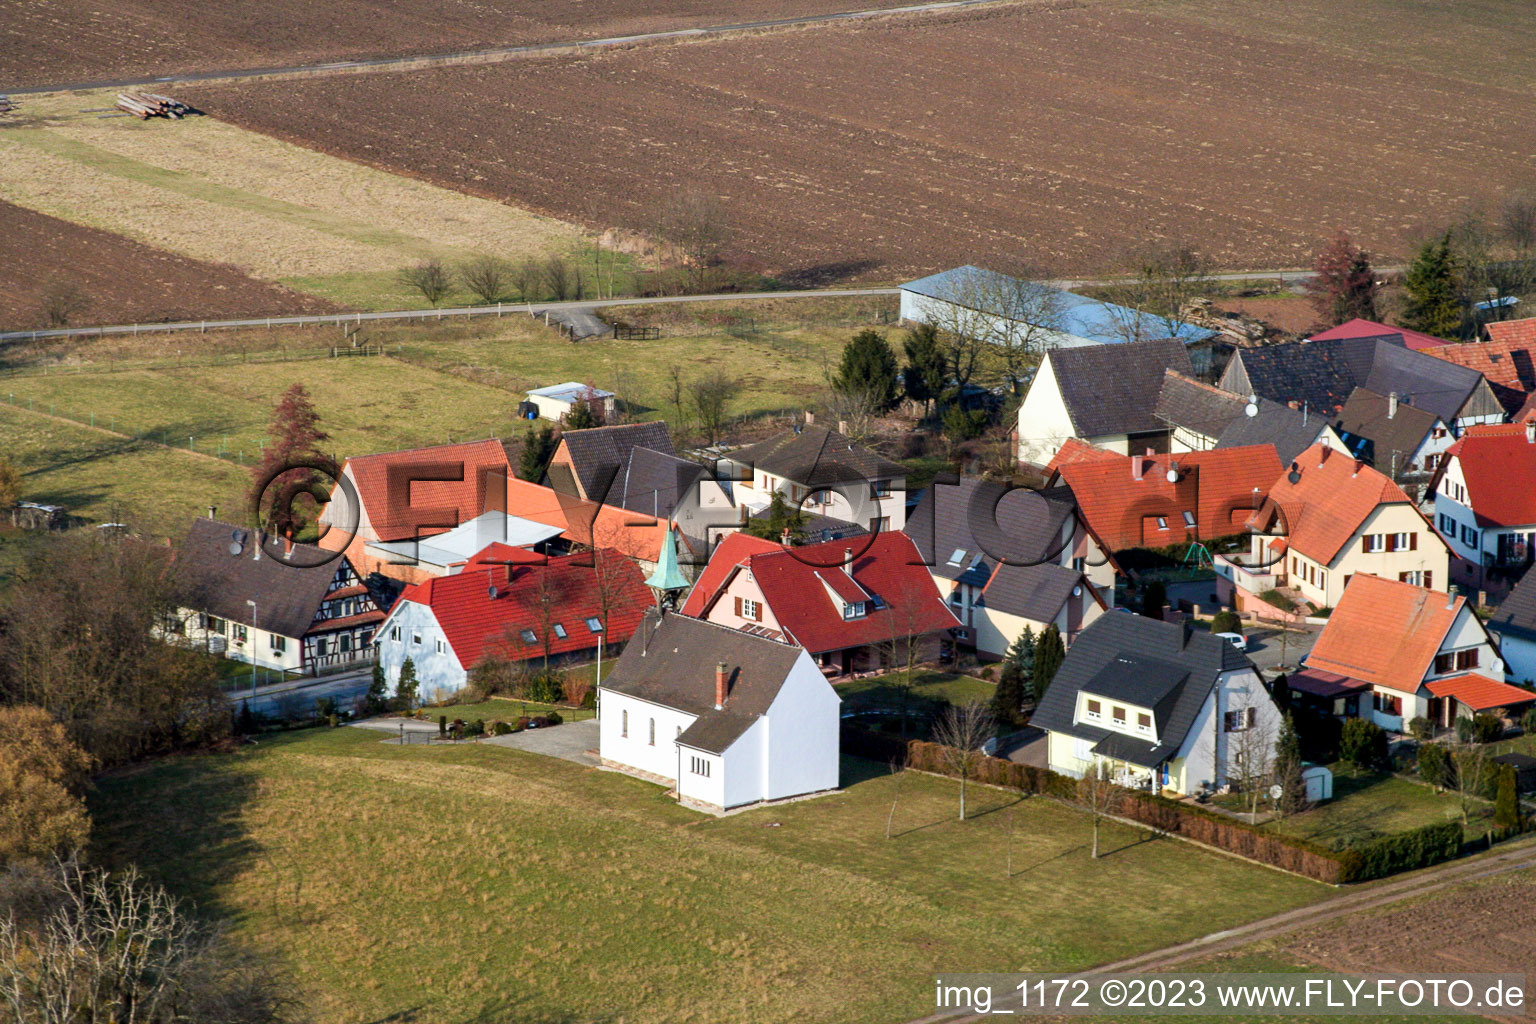 Niederlauterbach im Bundesland Bas-Rhin, Frankreich aus der Luft betrachtet